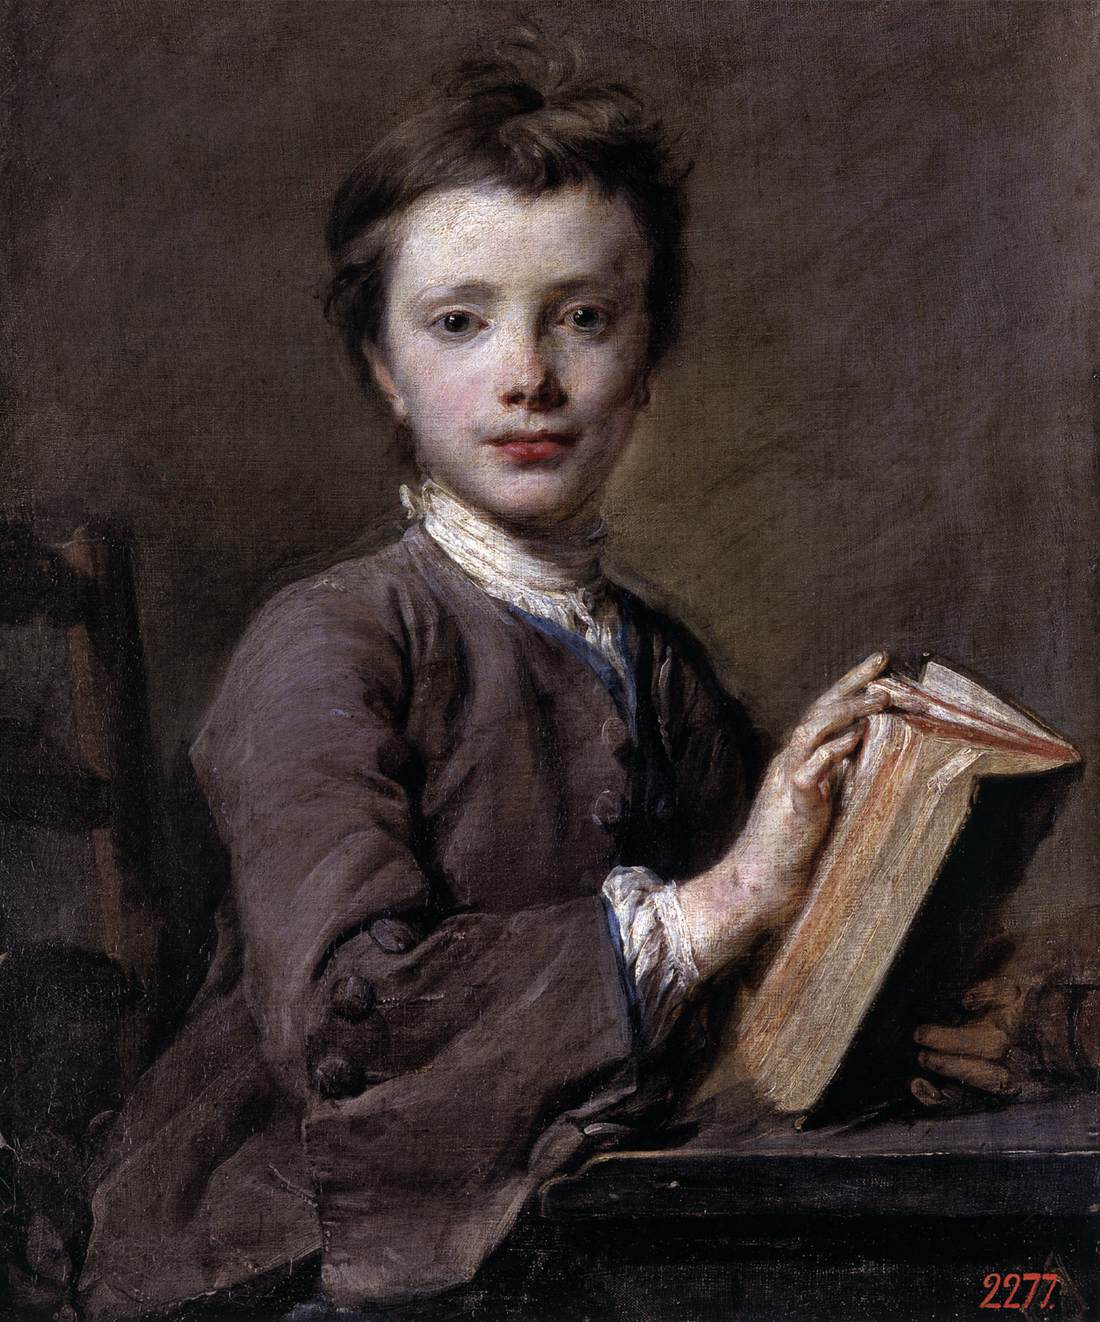 Kitaplı bir çocuk portresi